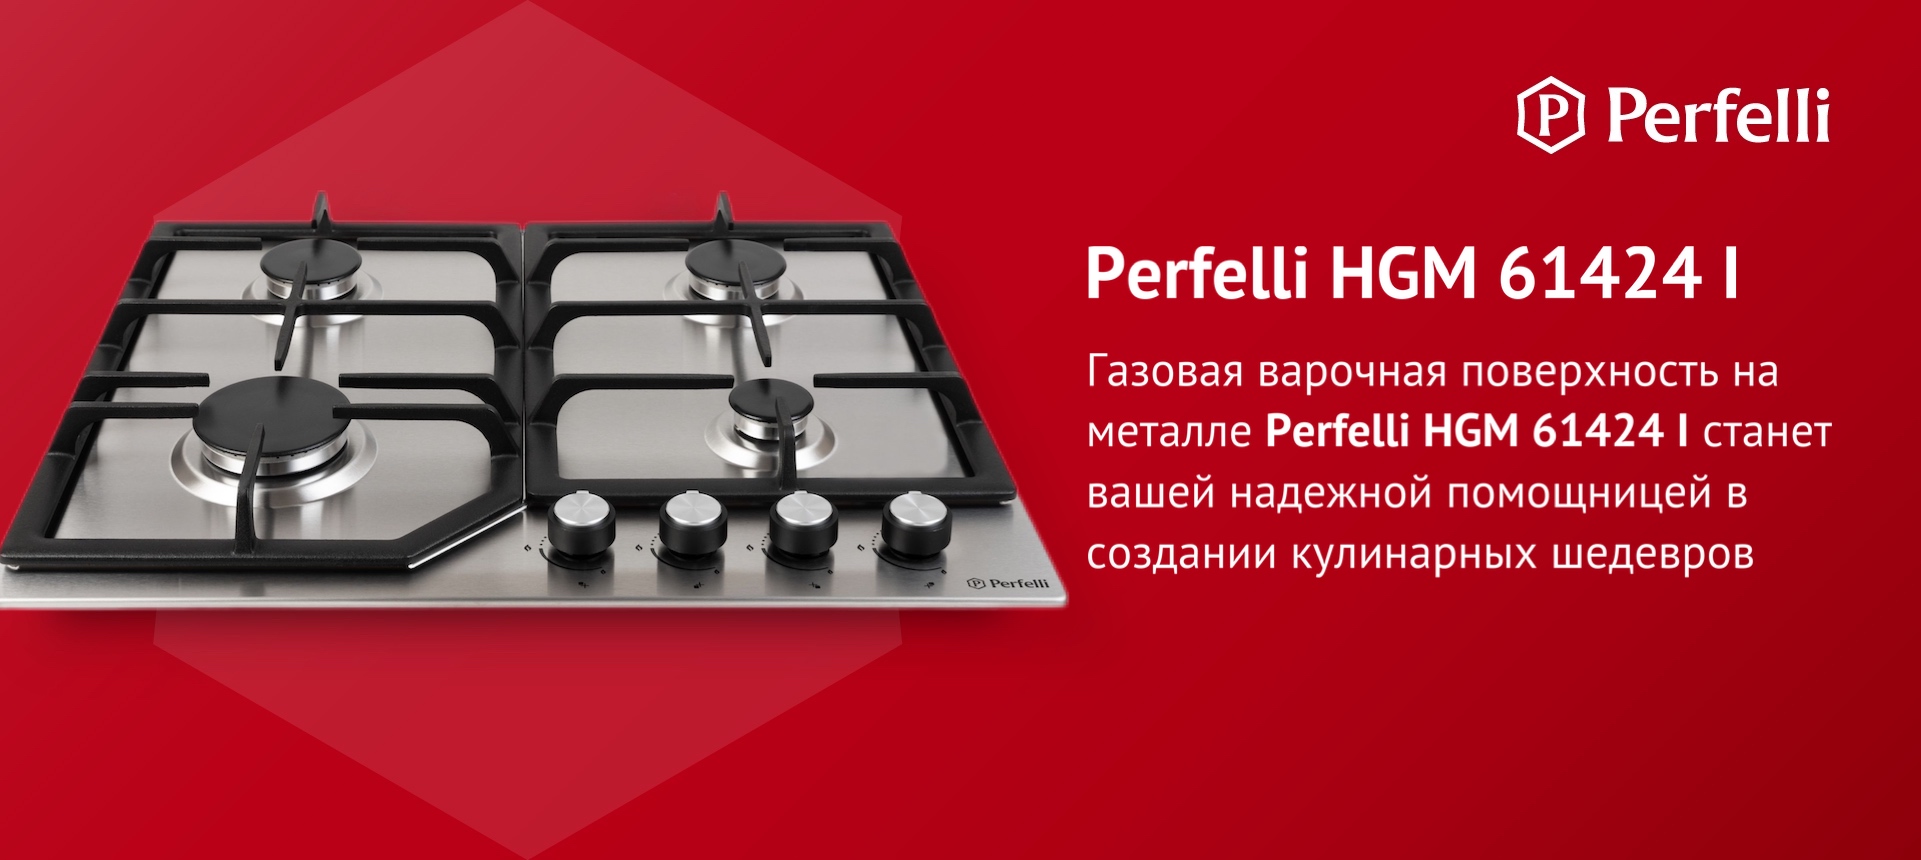 Газовая варочная поверхность на металле Perfelli HGM 61424 I станет вашей надежной помощницей в создании кулинарных шедевров